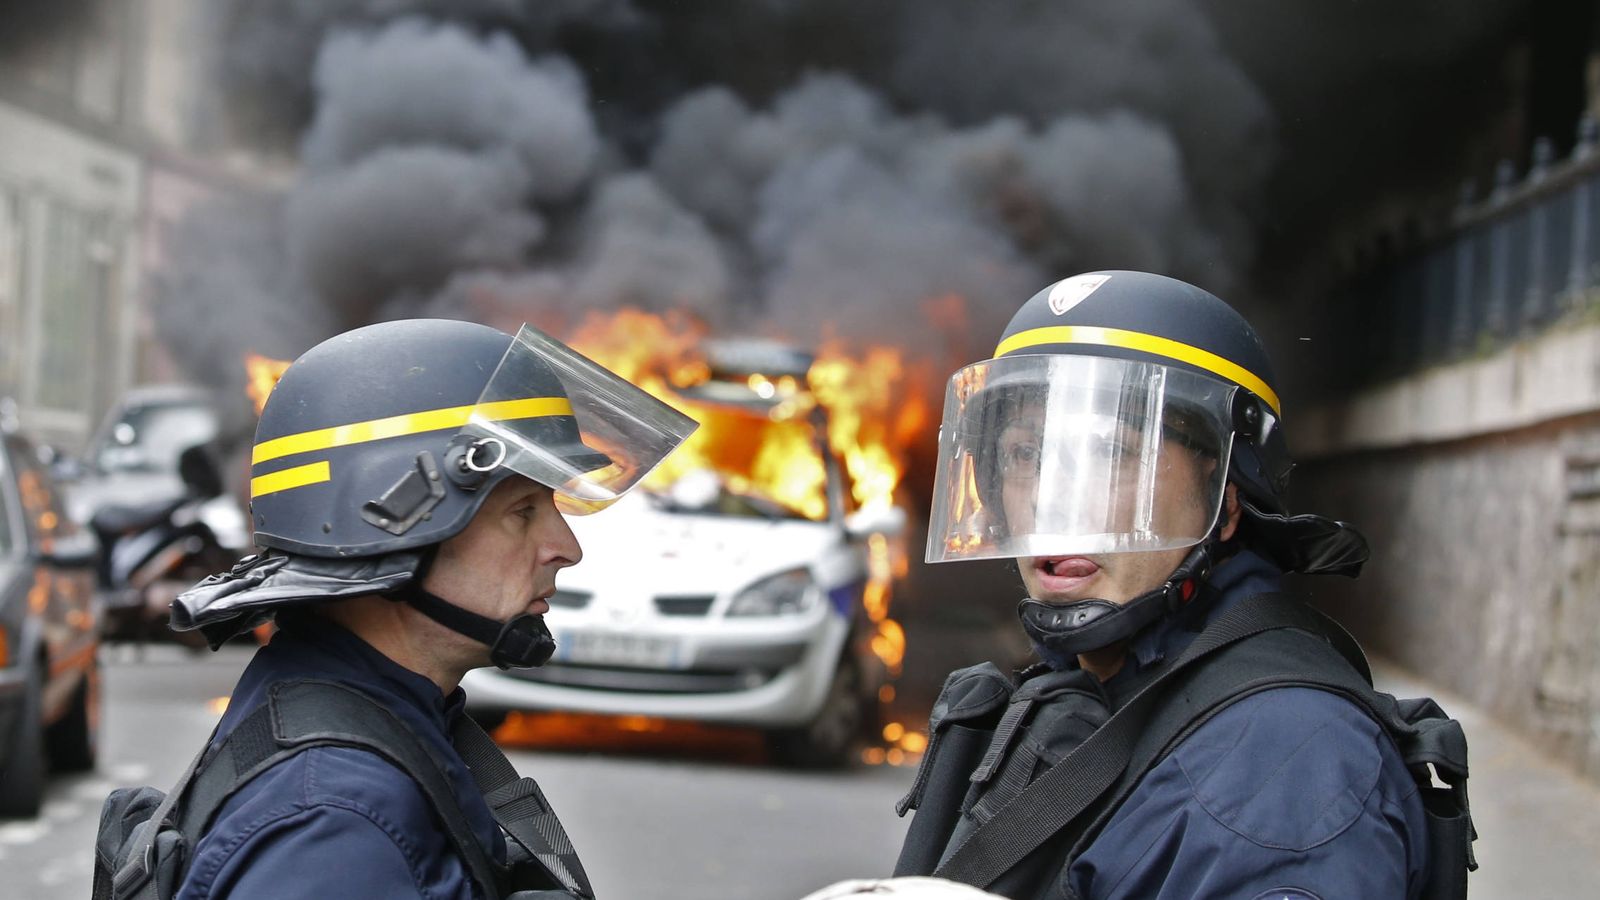 Foto: Un vehículo de la policía arde en París durante una protesta contra la violencia policial, en mayo de 2016 (Reuters).